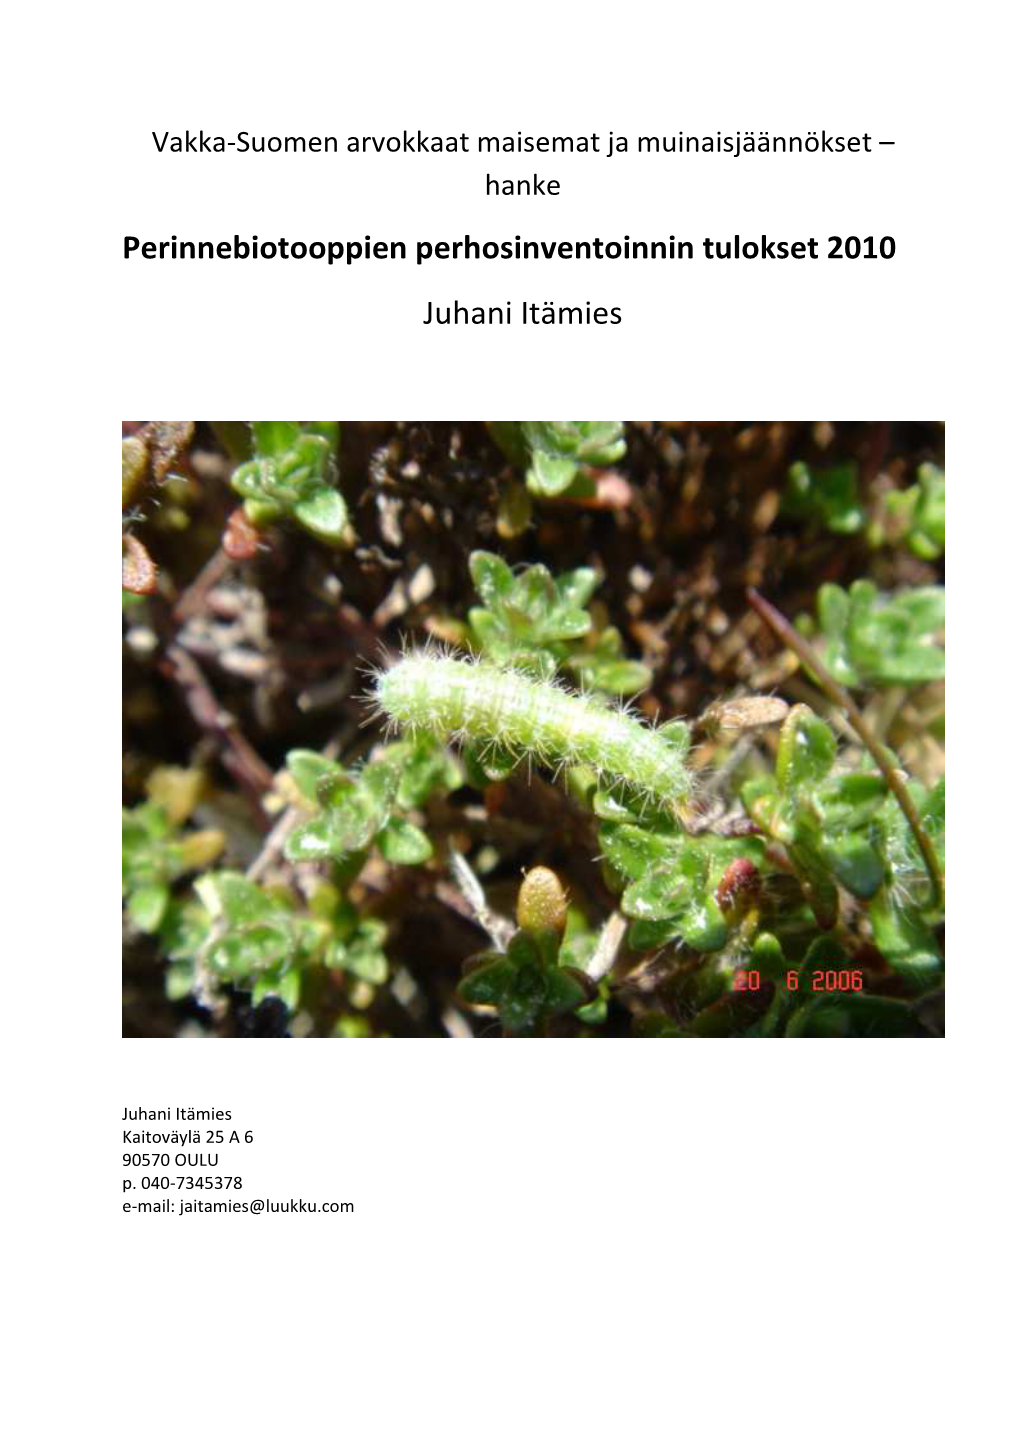 Perinnebiotooppien Perhosinventoinnin Tulokset 2010 Juhani Itämies